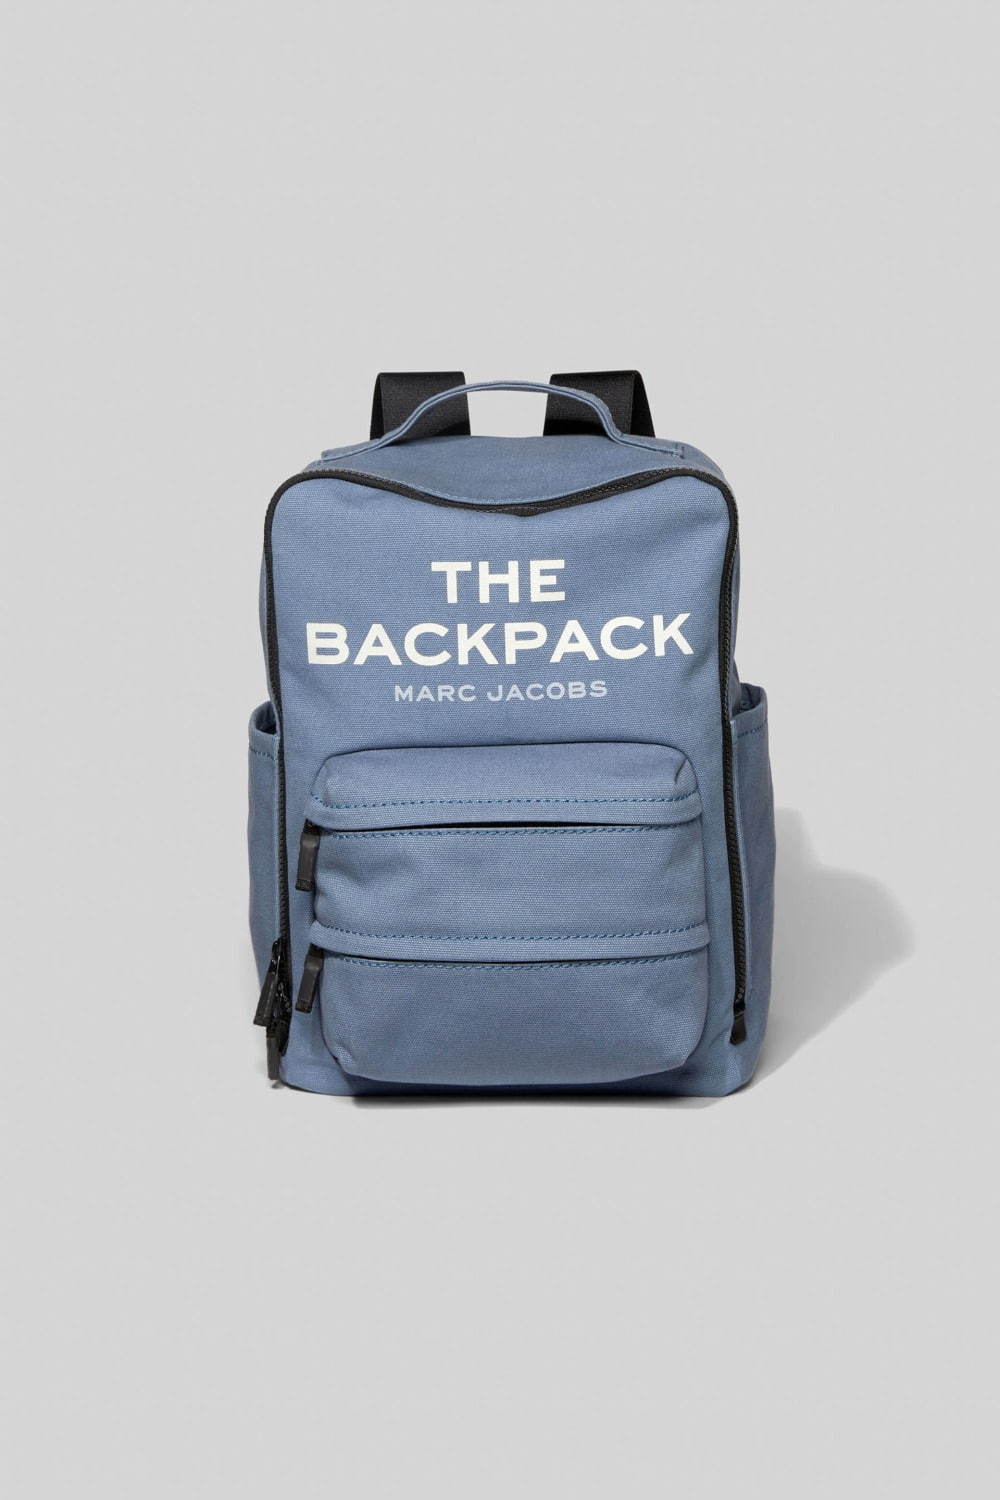 マーク ジェイコブス新作バッグパック「ザ バックパック」大きめロゴ